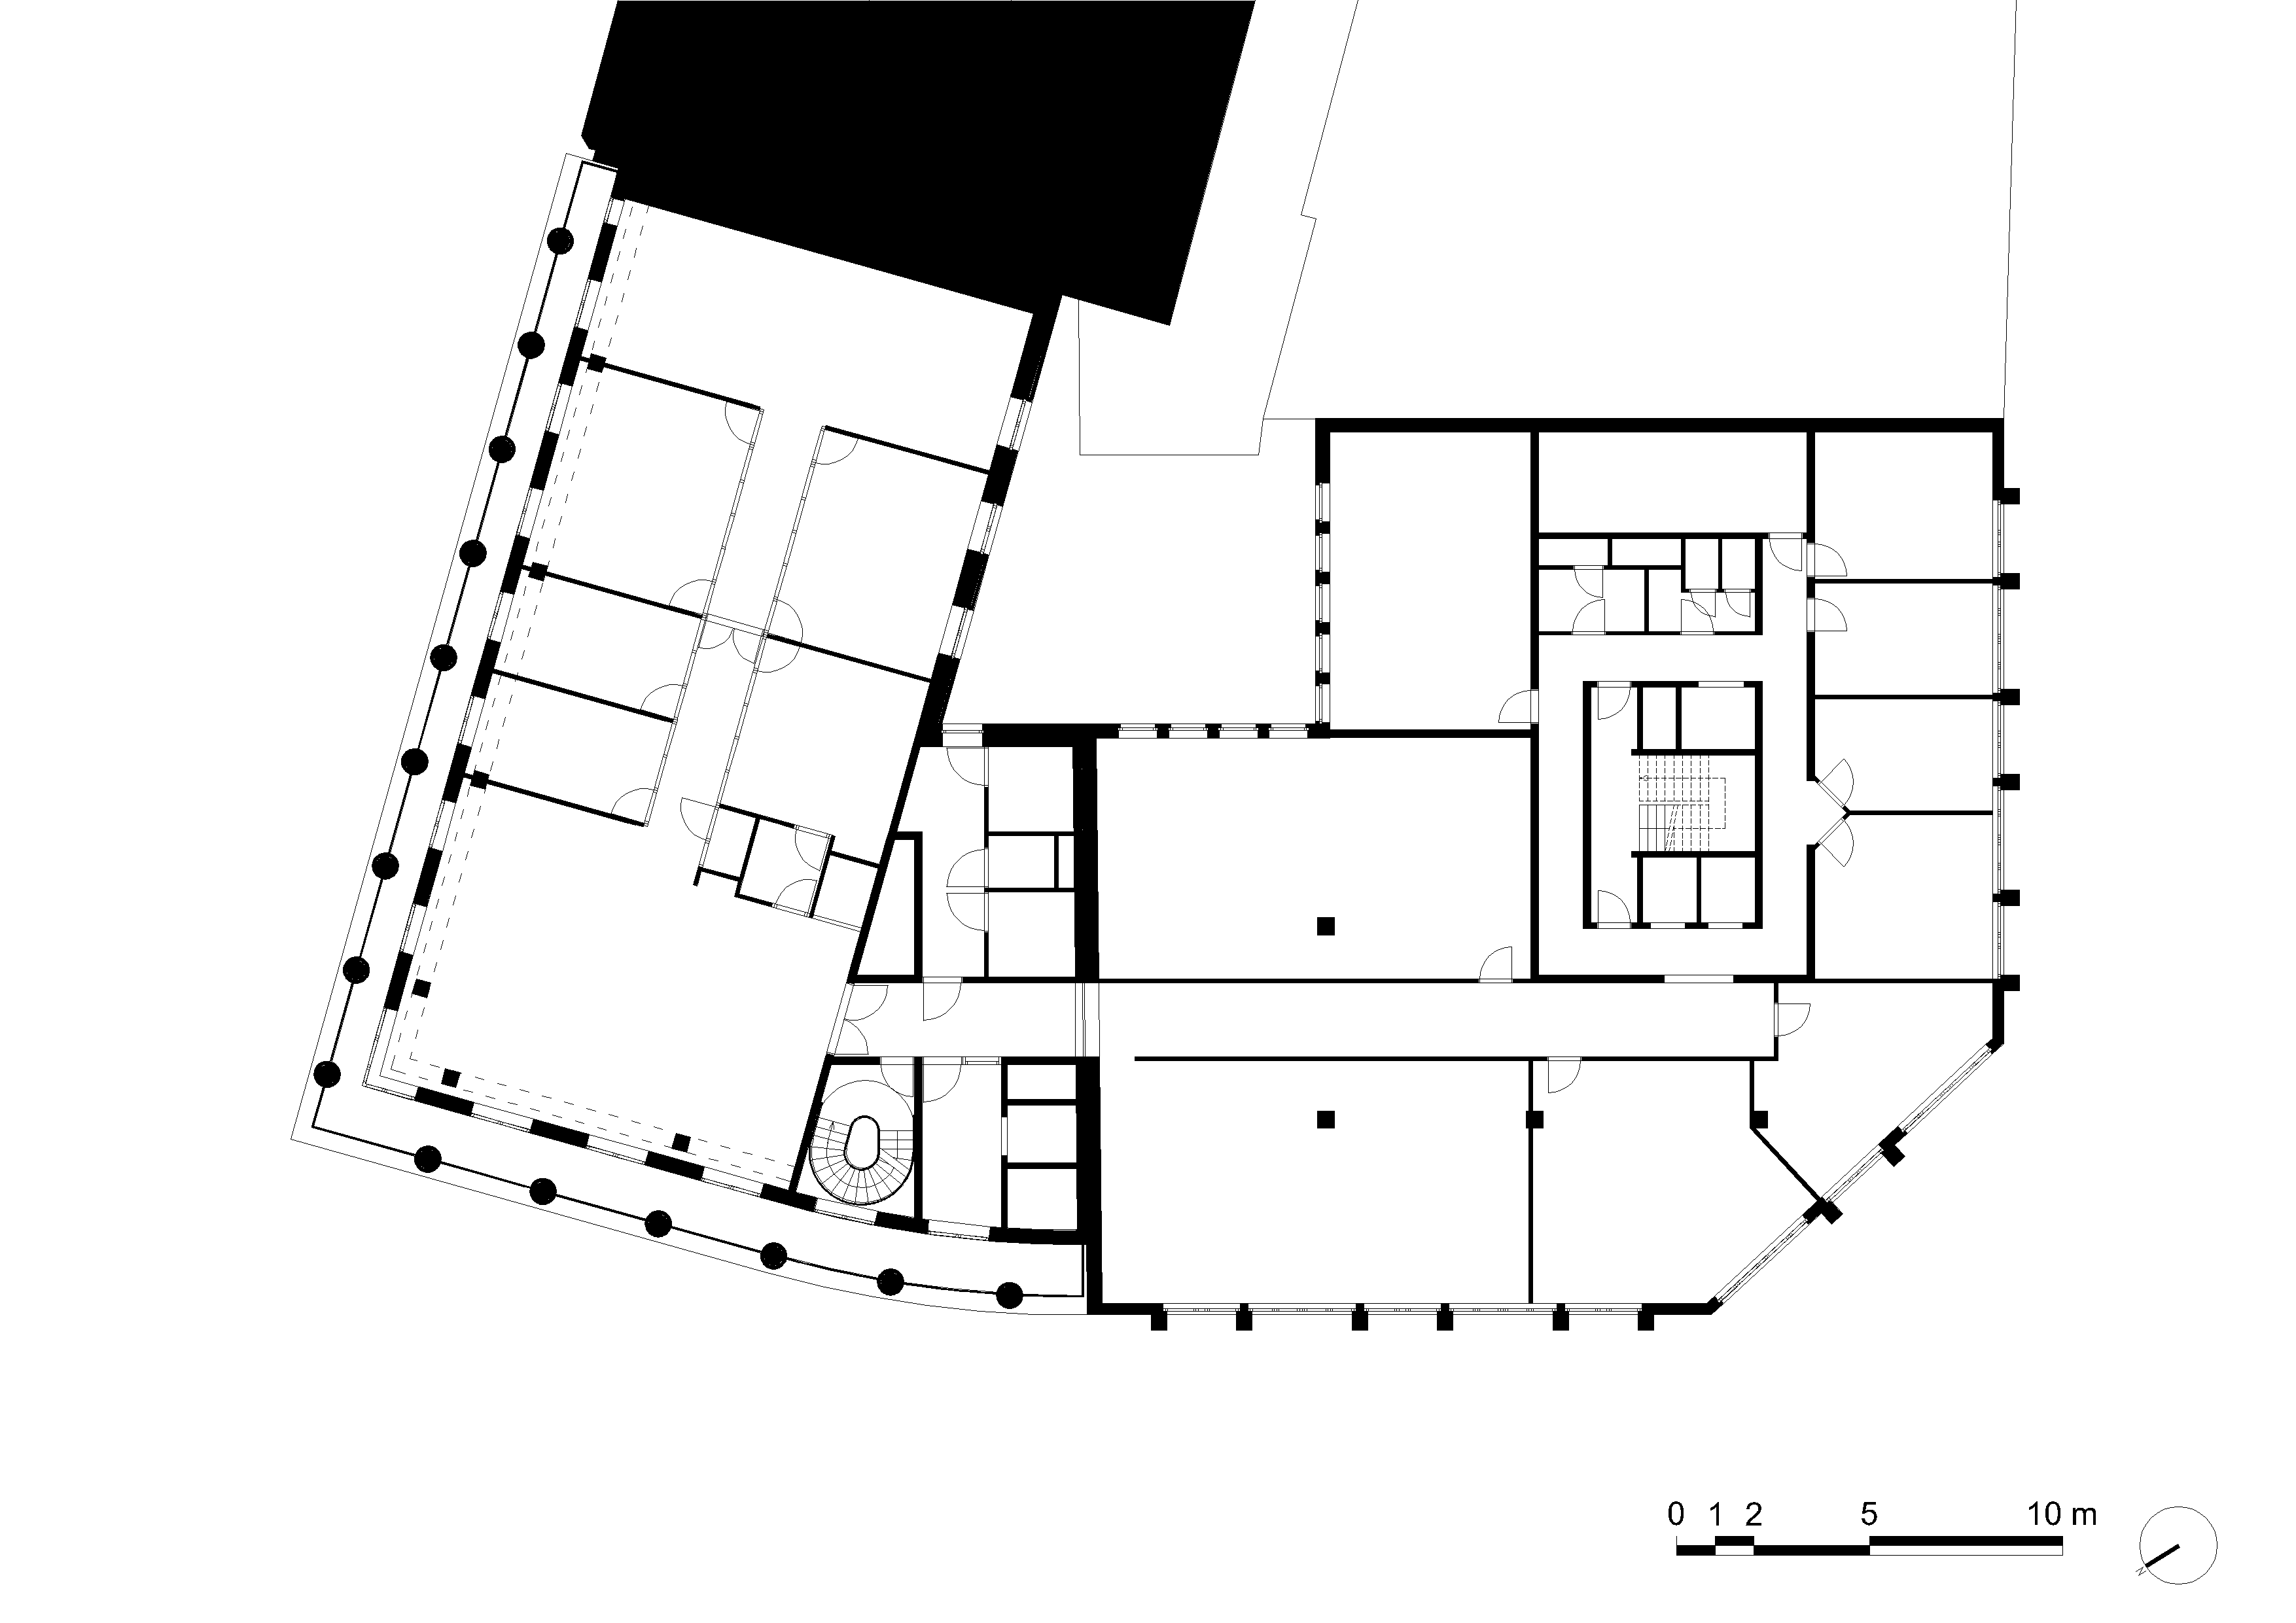 architecture-contemporaine-bureau-siege-SWCS-credit-social-charleroi-reservoir-a-META-RGPA-goffart-polome-plan-deuxieme-etage